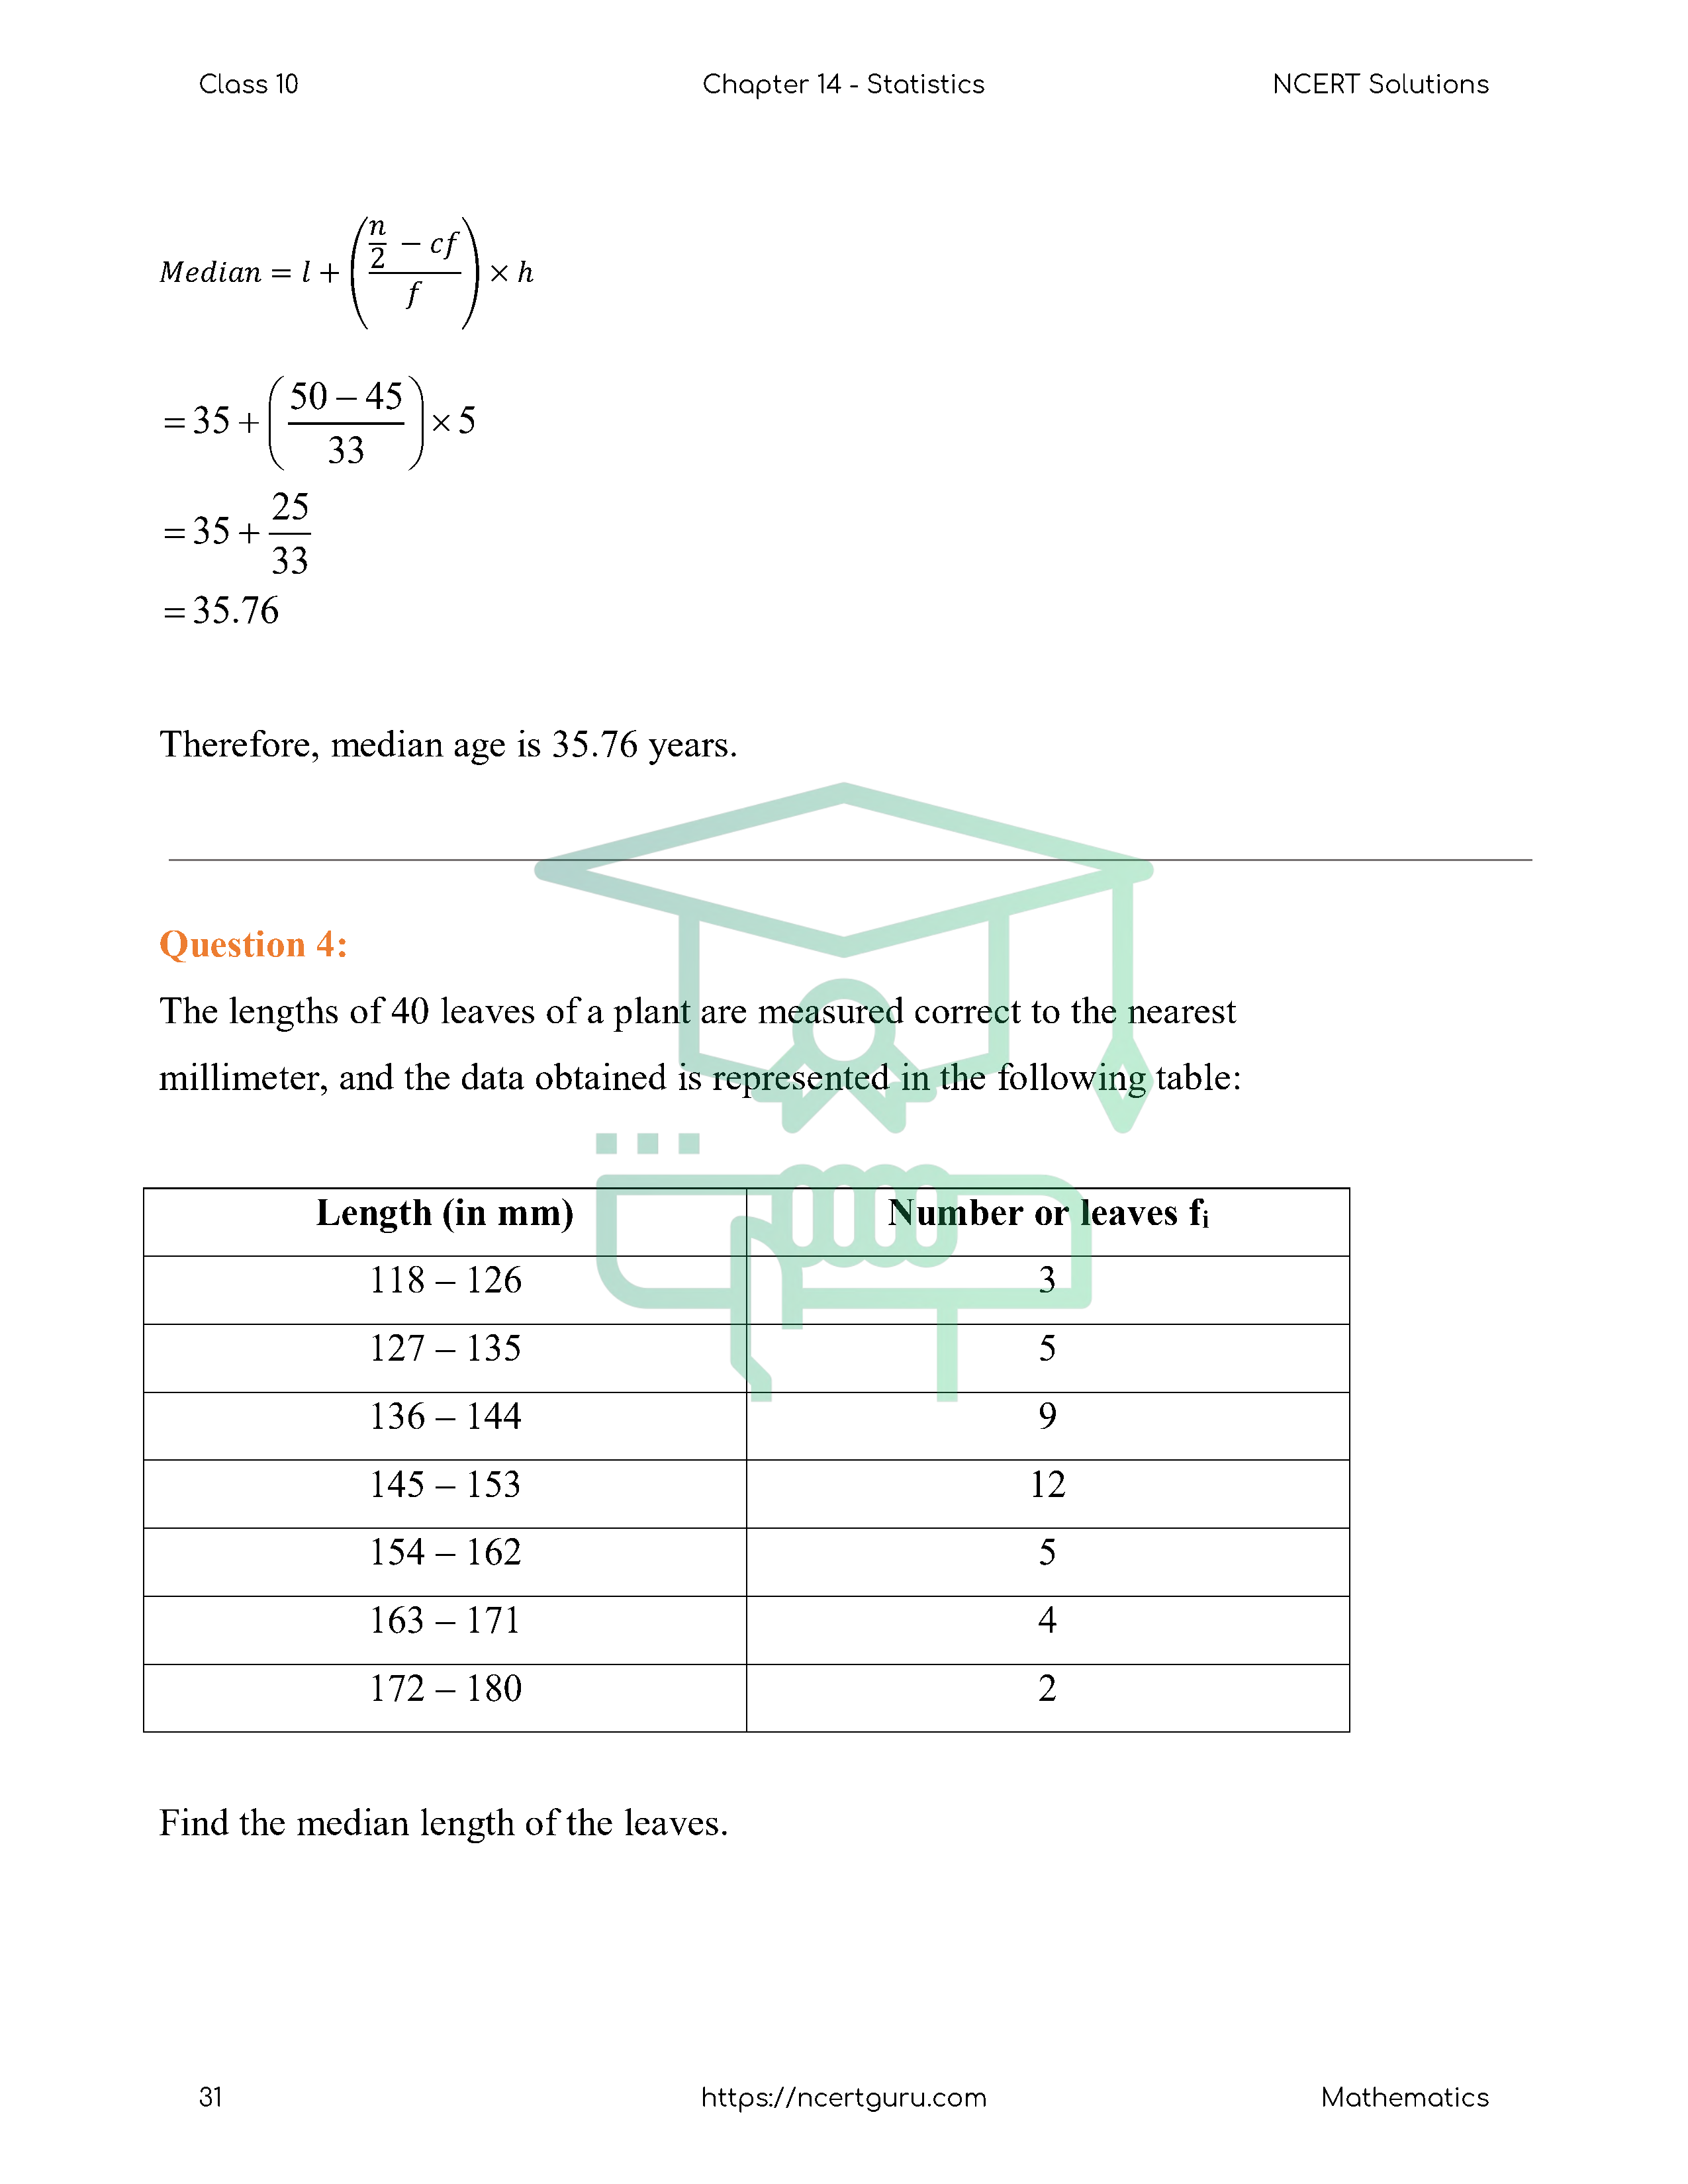 NCERT Solutions for Class 10 Maths Chapter 14